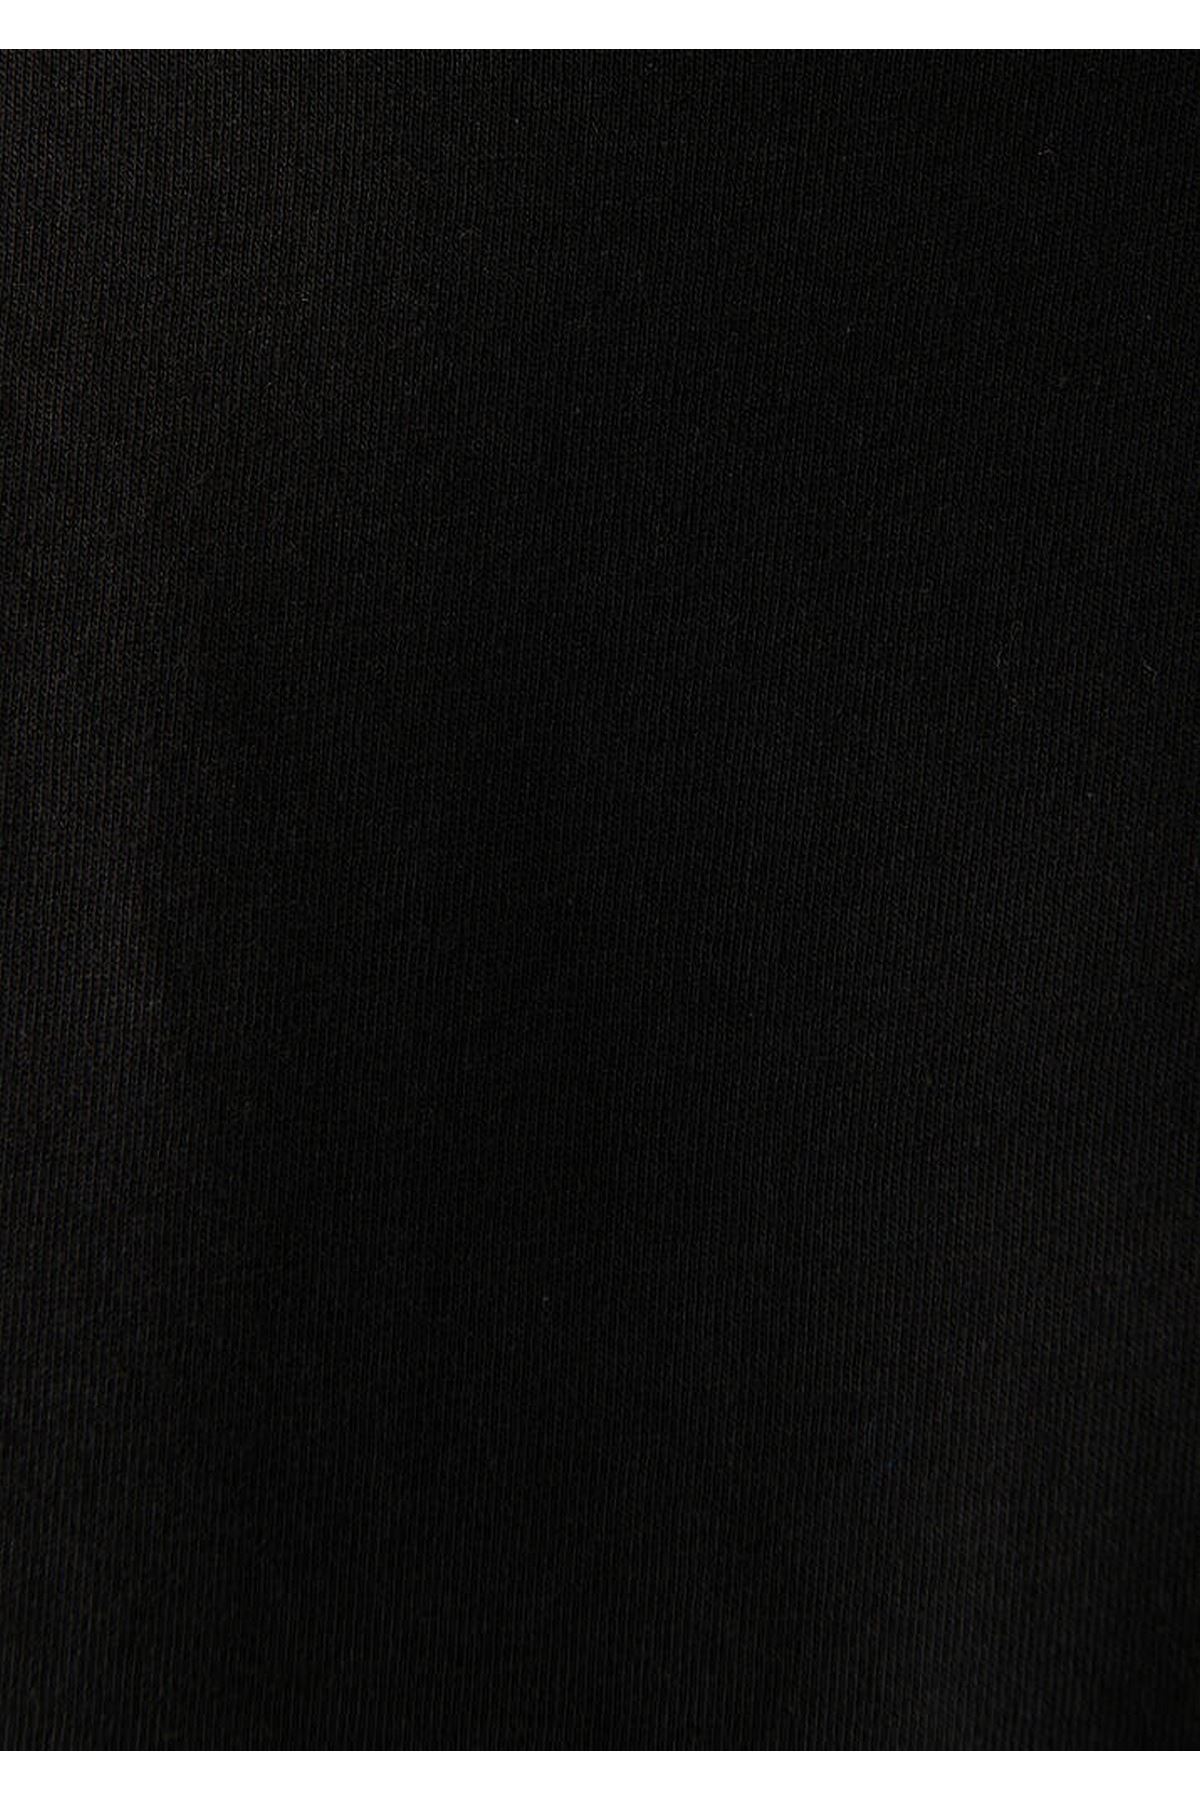 Mavi Erkek Siyah Tişört - M065574-900